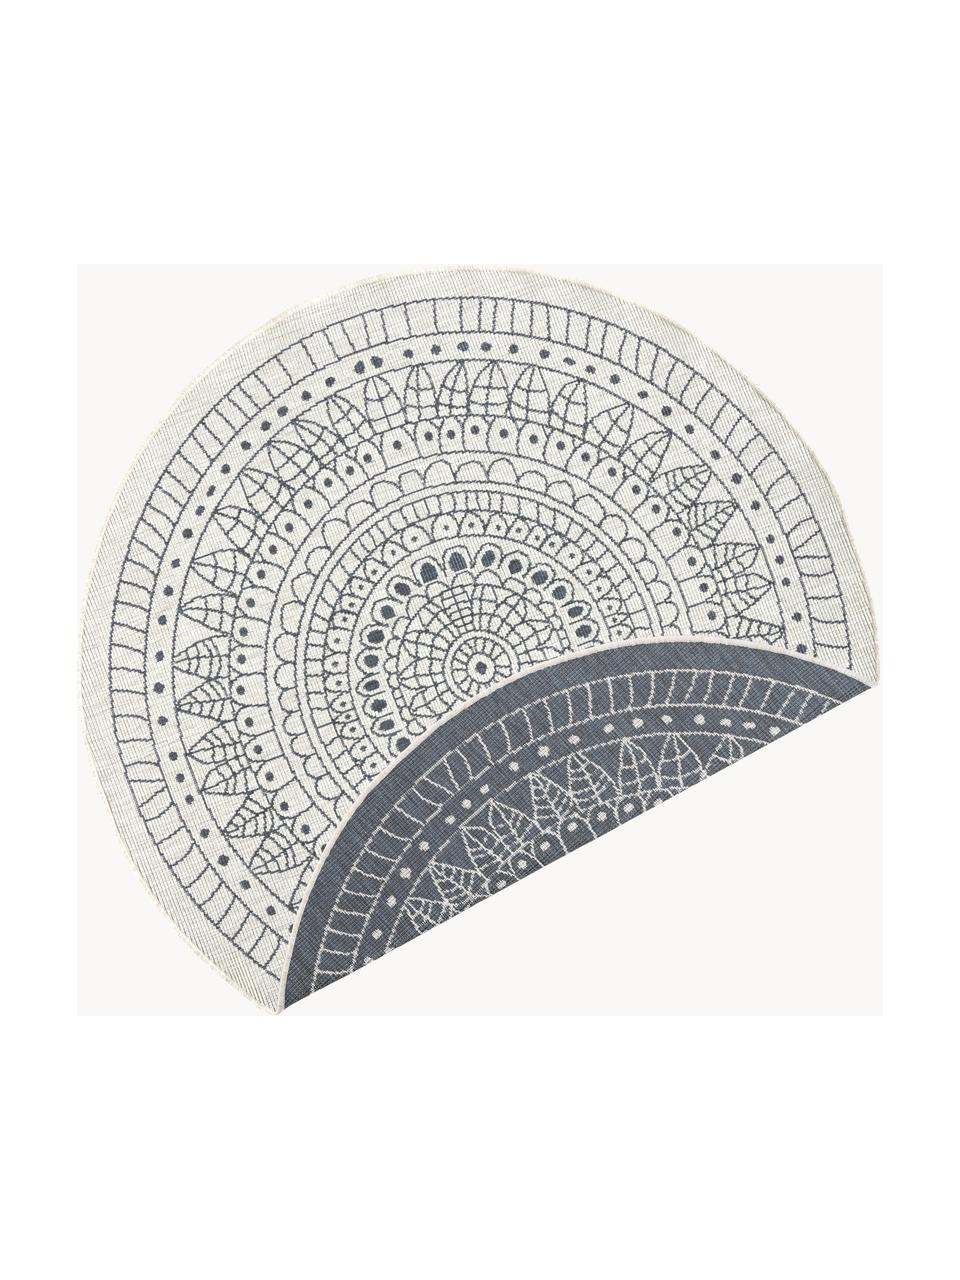 Okrúhly vzorovaný obojstranný koberec do interiéru/exteriéru Porto, 100 % polypropylén, Sivá, krémová, Ø 140 cm (veľkosť M)